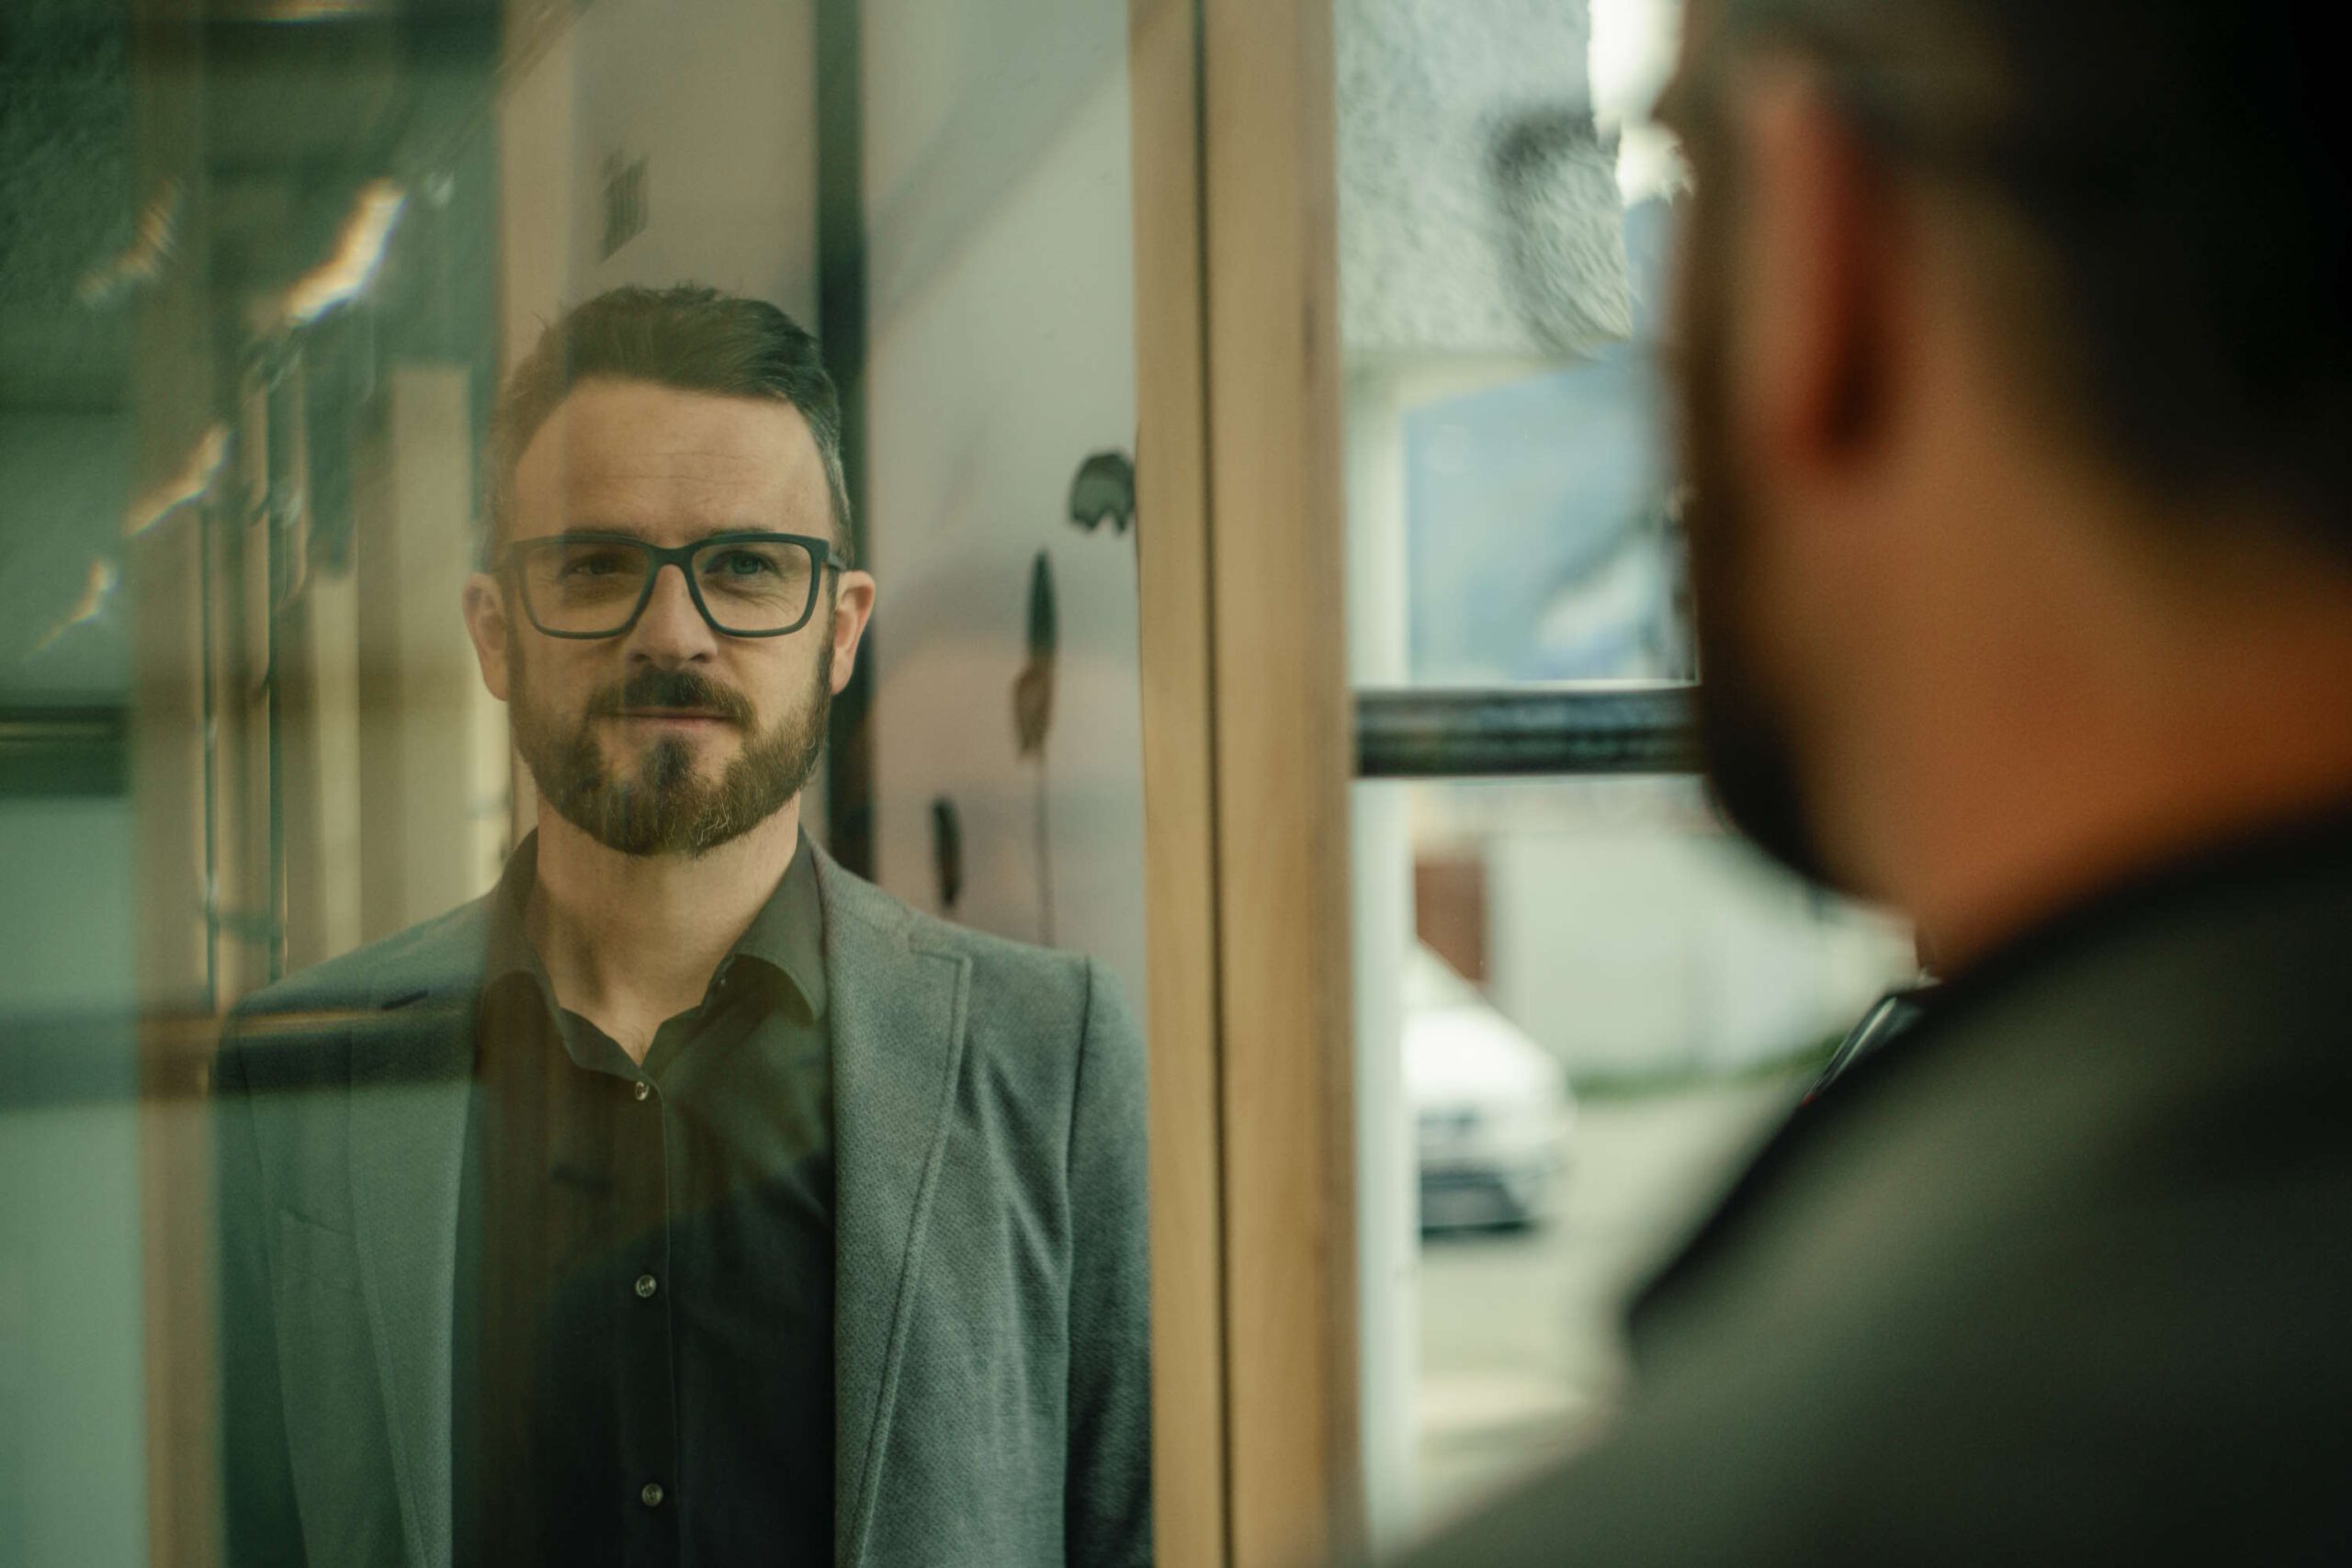 Mann mit Brille und Bart, der in einem Spiegel schaut, zeigt wellenartiges Flimmern im Auge